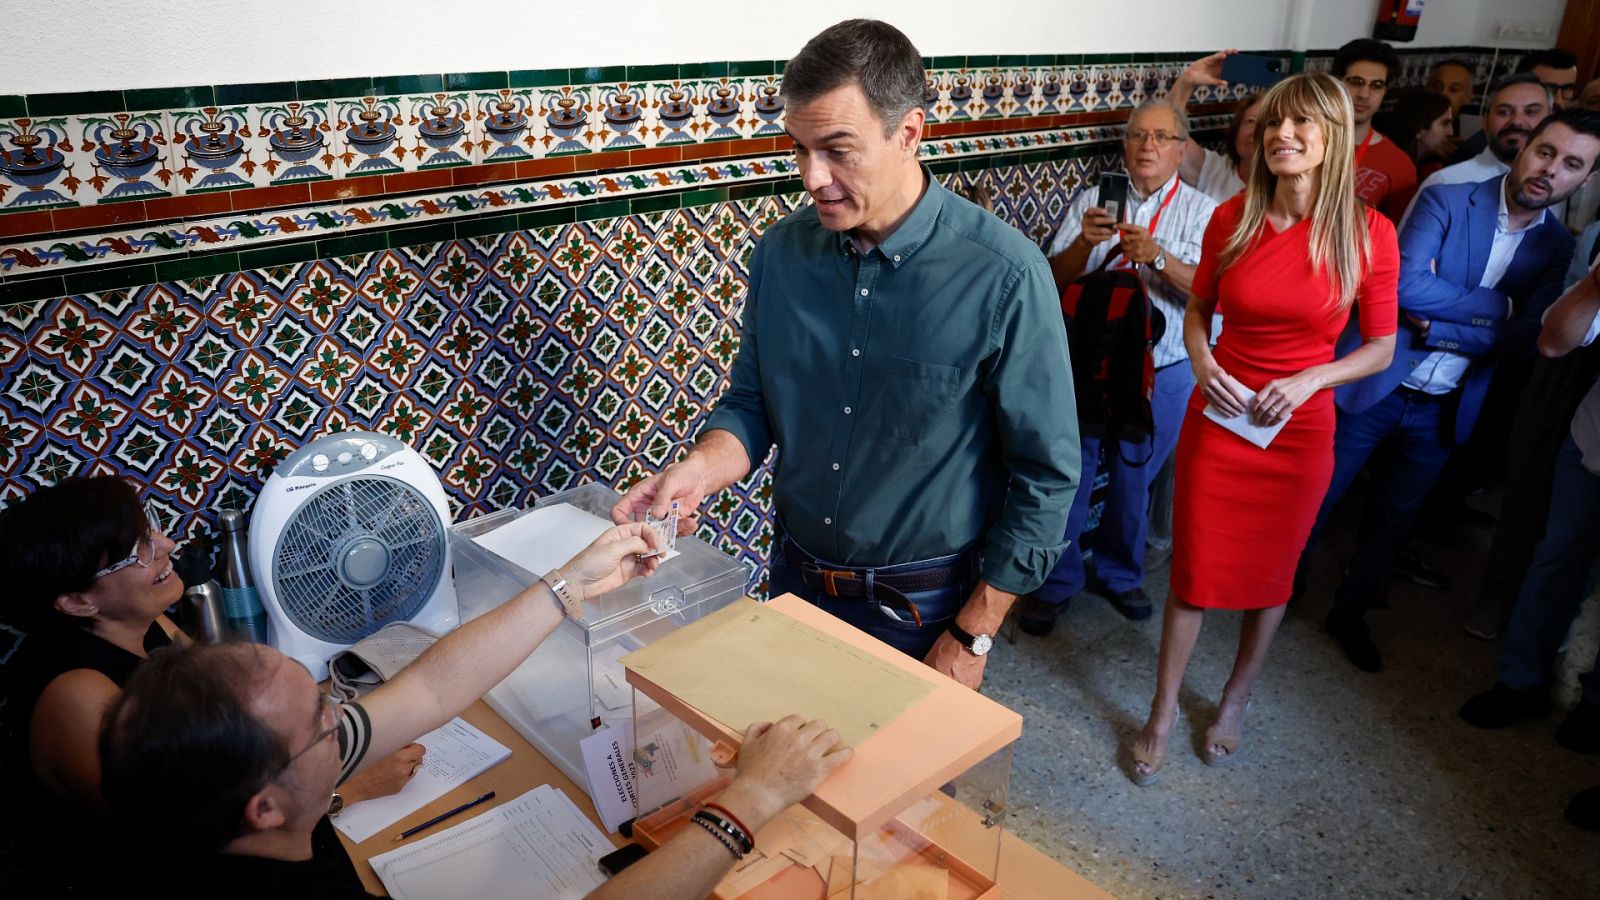 Sánchez, el primer candidato en votar, anima a la participación: "Tengo buenas vibraciones"